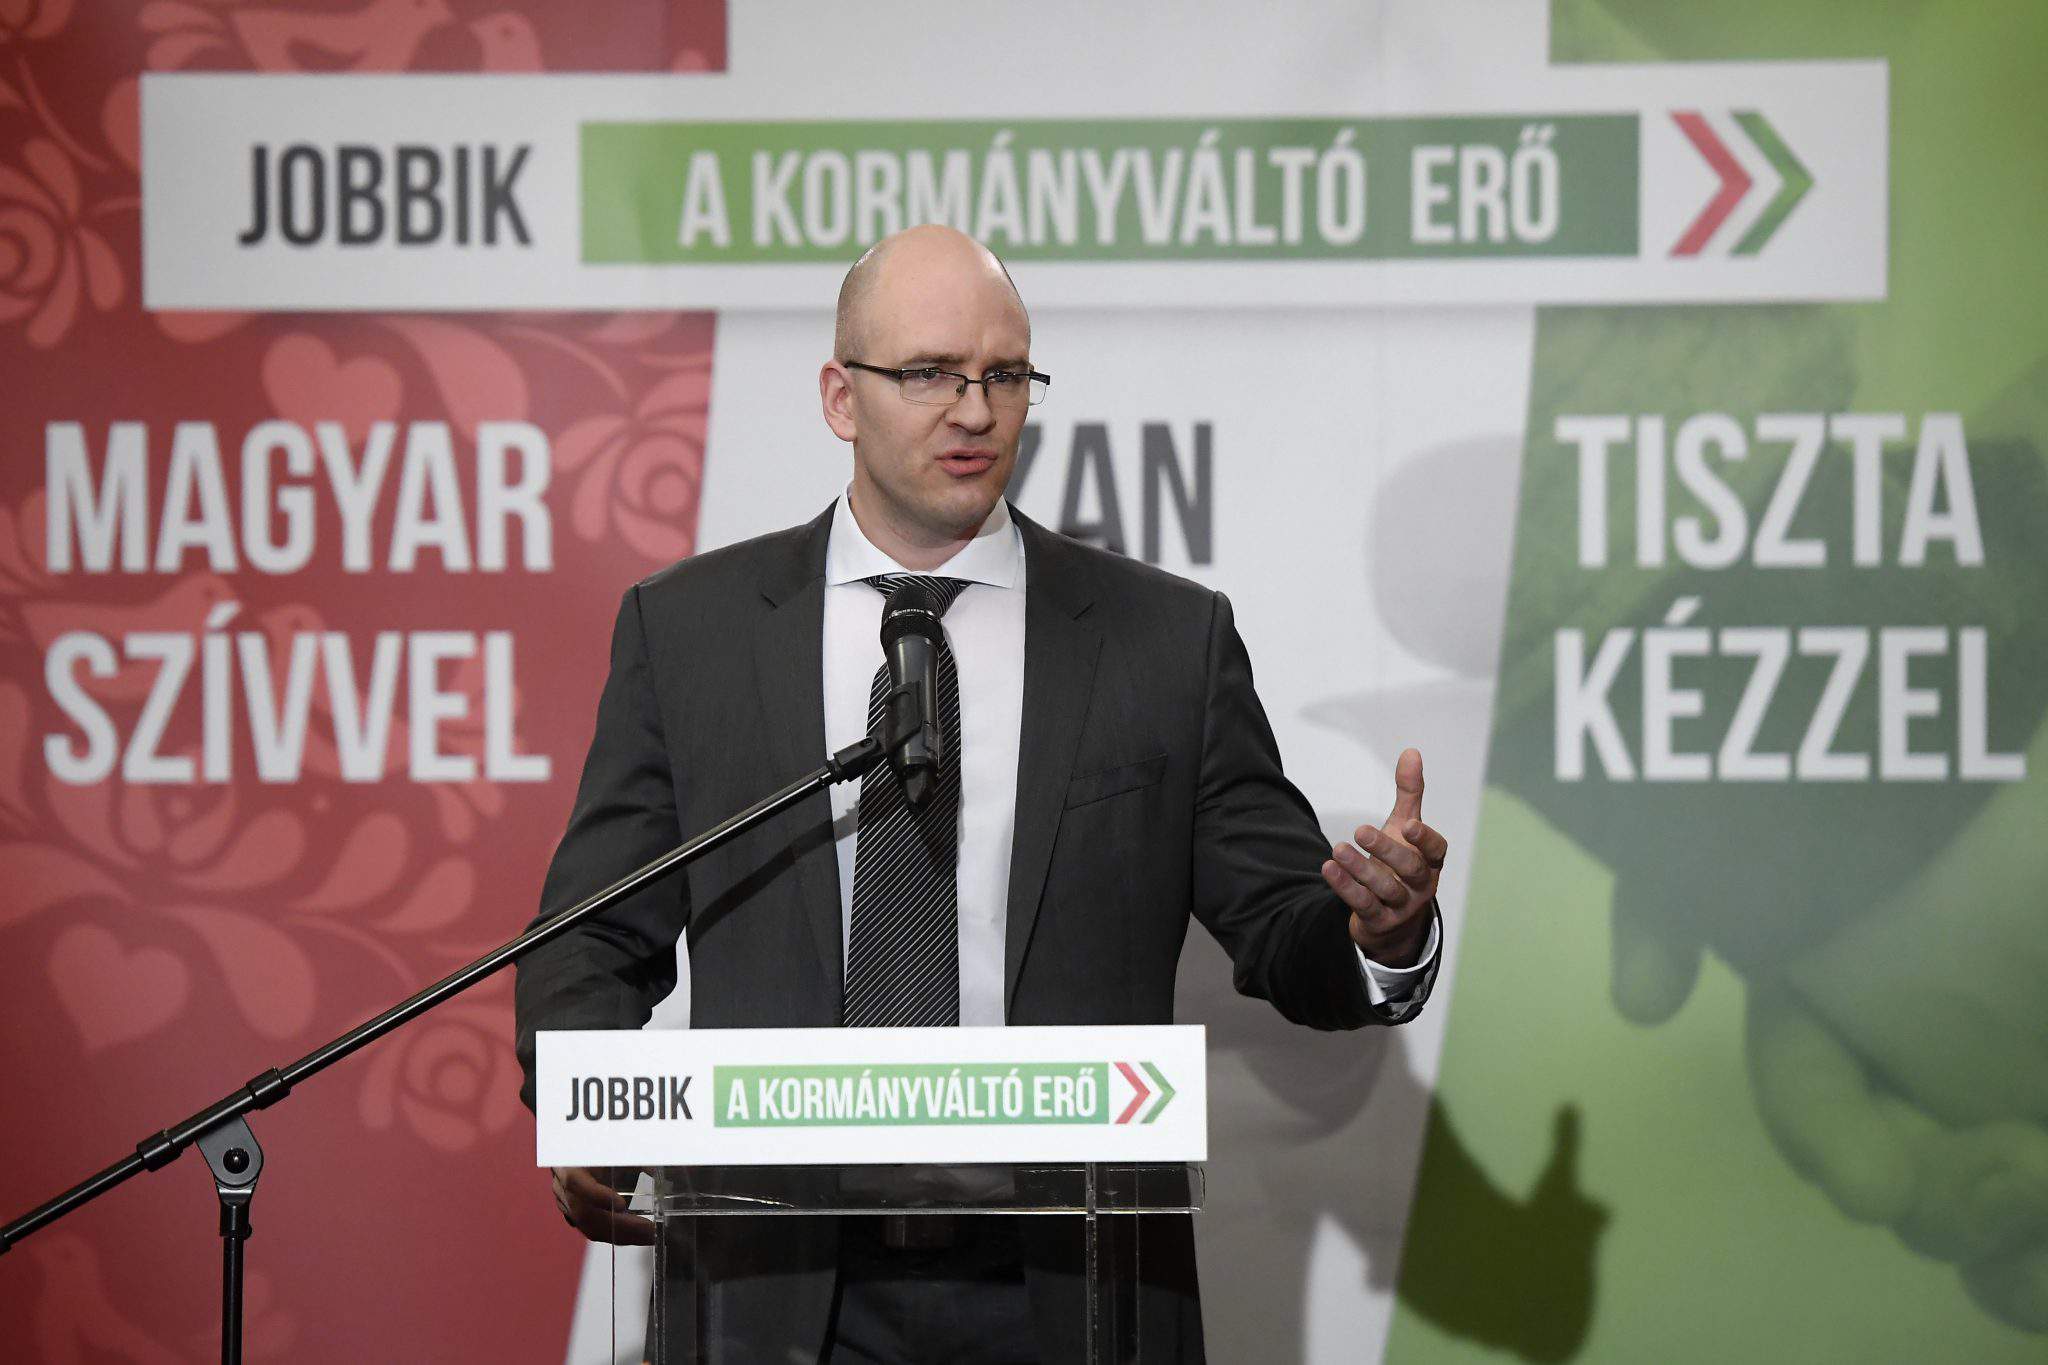 Выборы 2018 – Jobbik обжалует результаты выборов